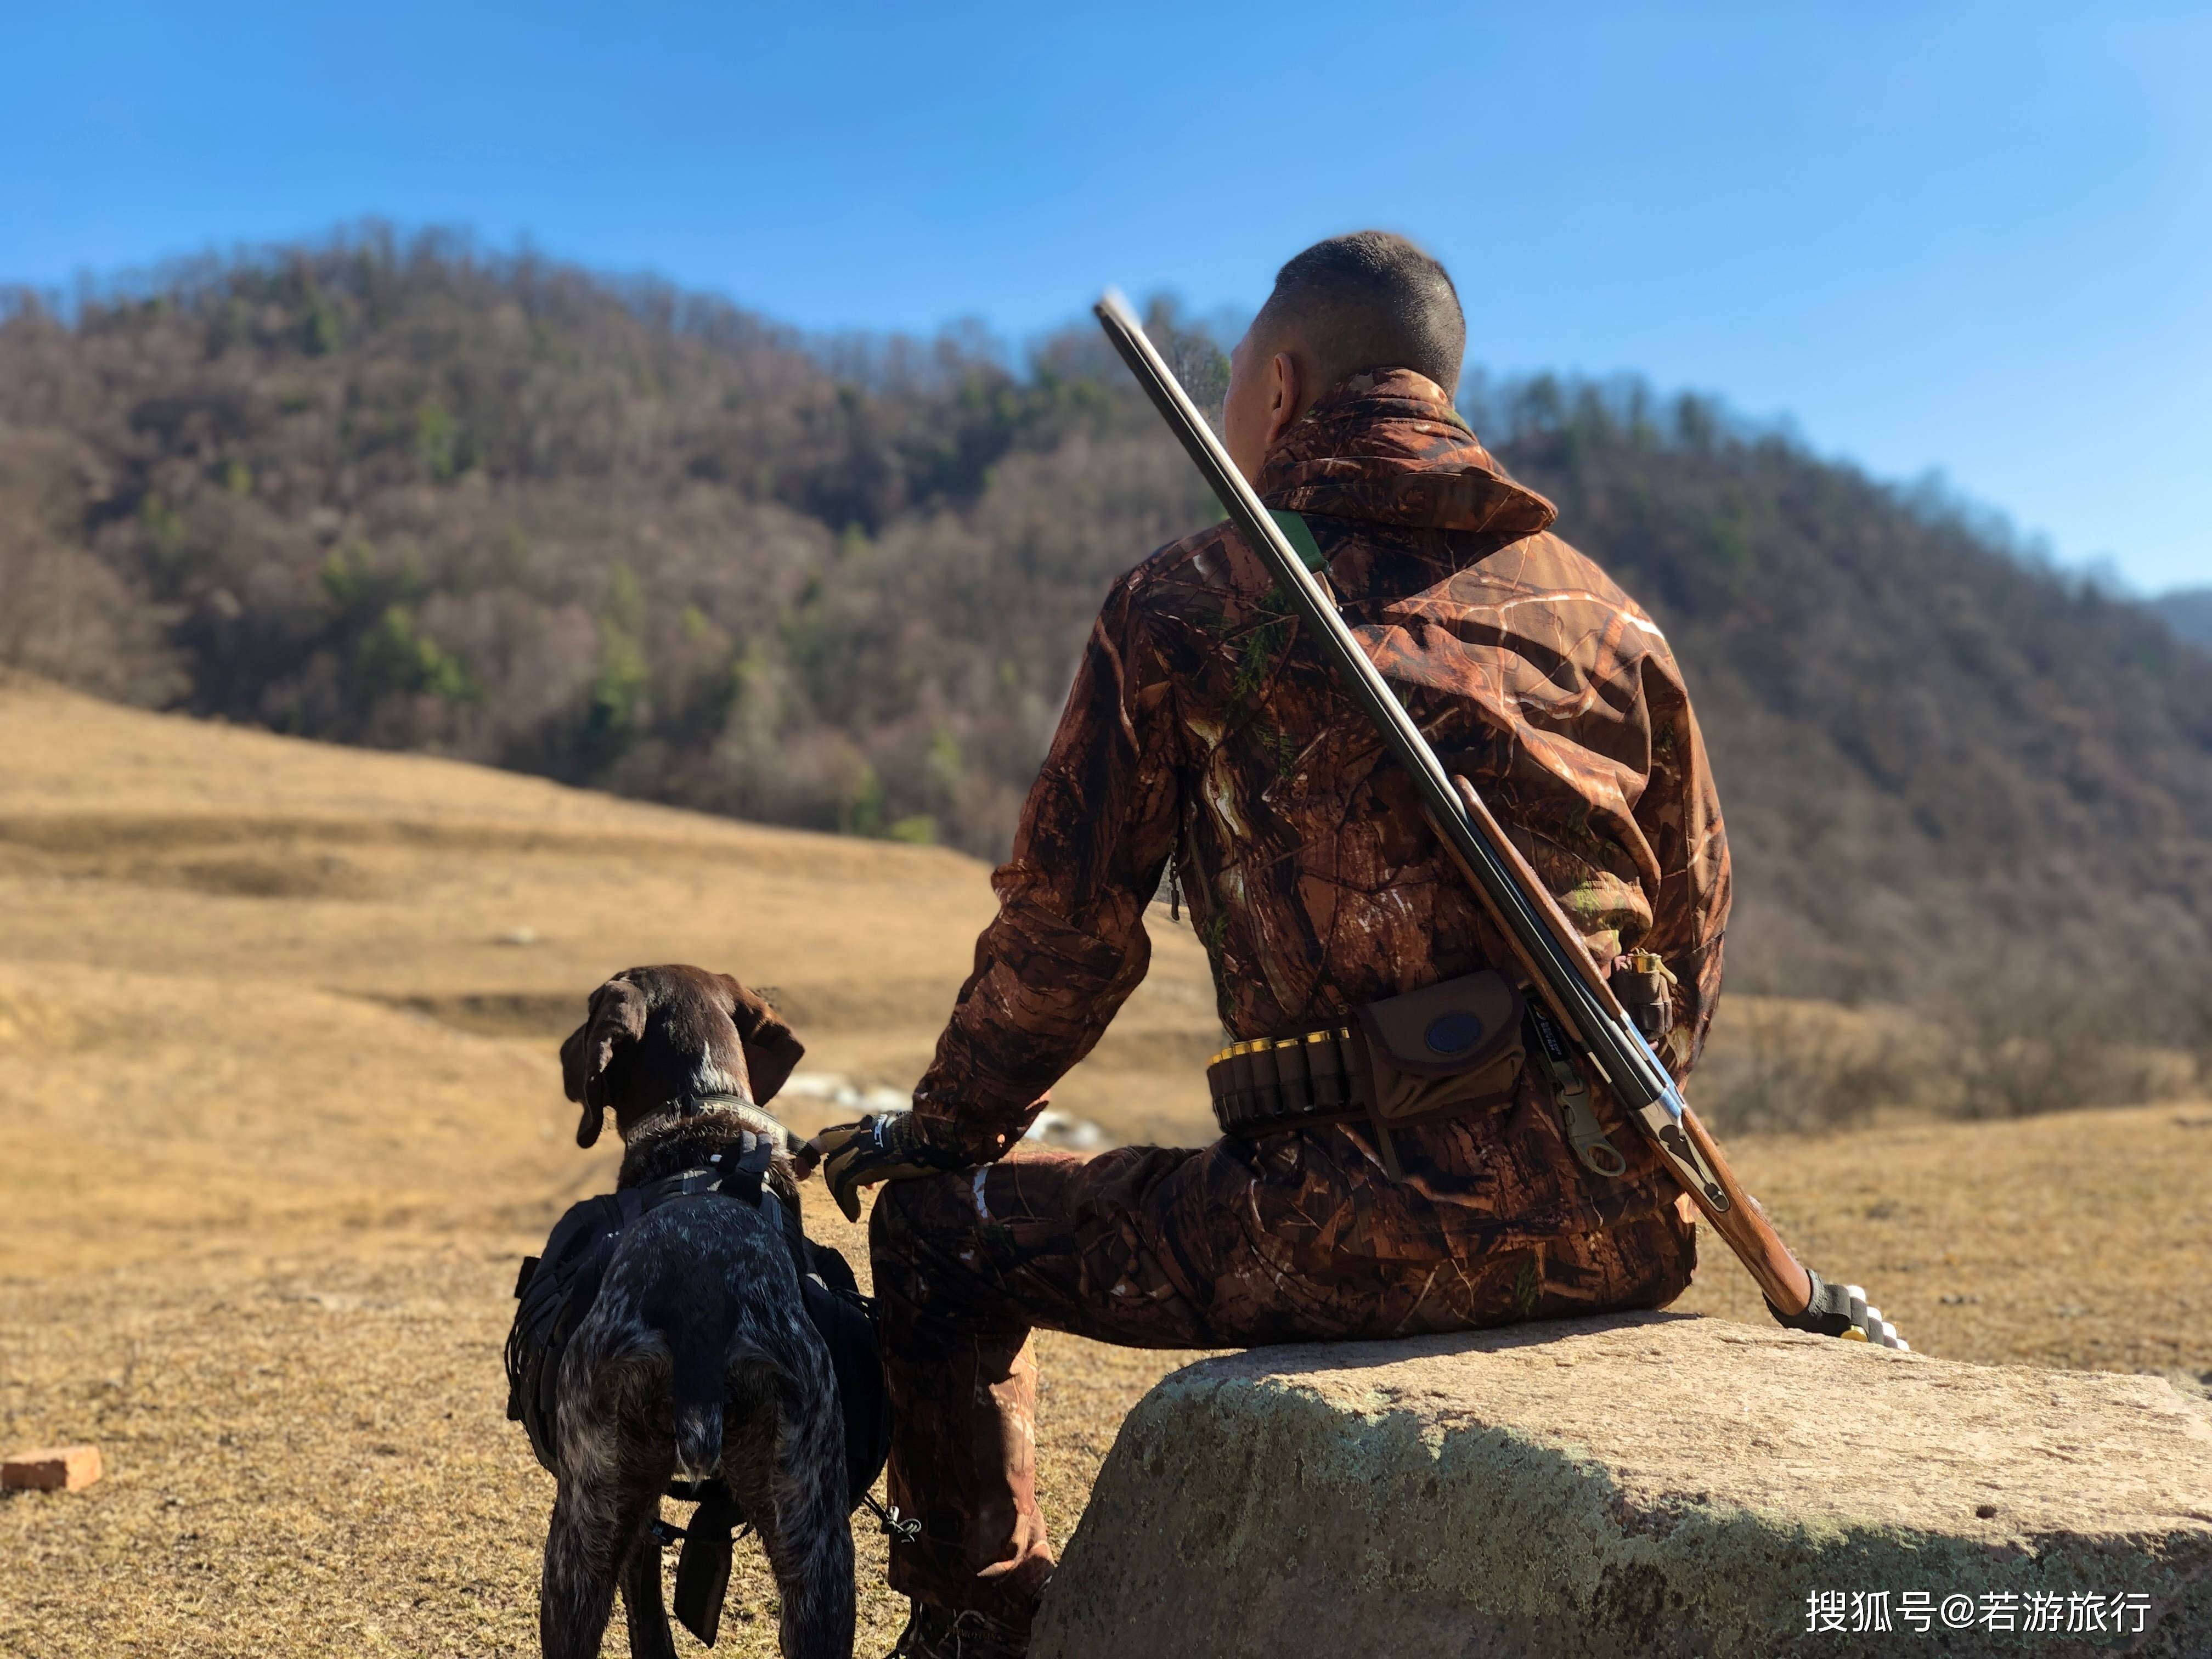 中国国内狩猎场打猎知识分享篇之弹药安全